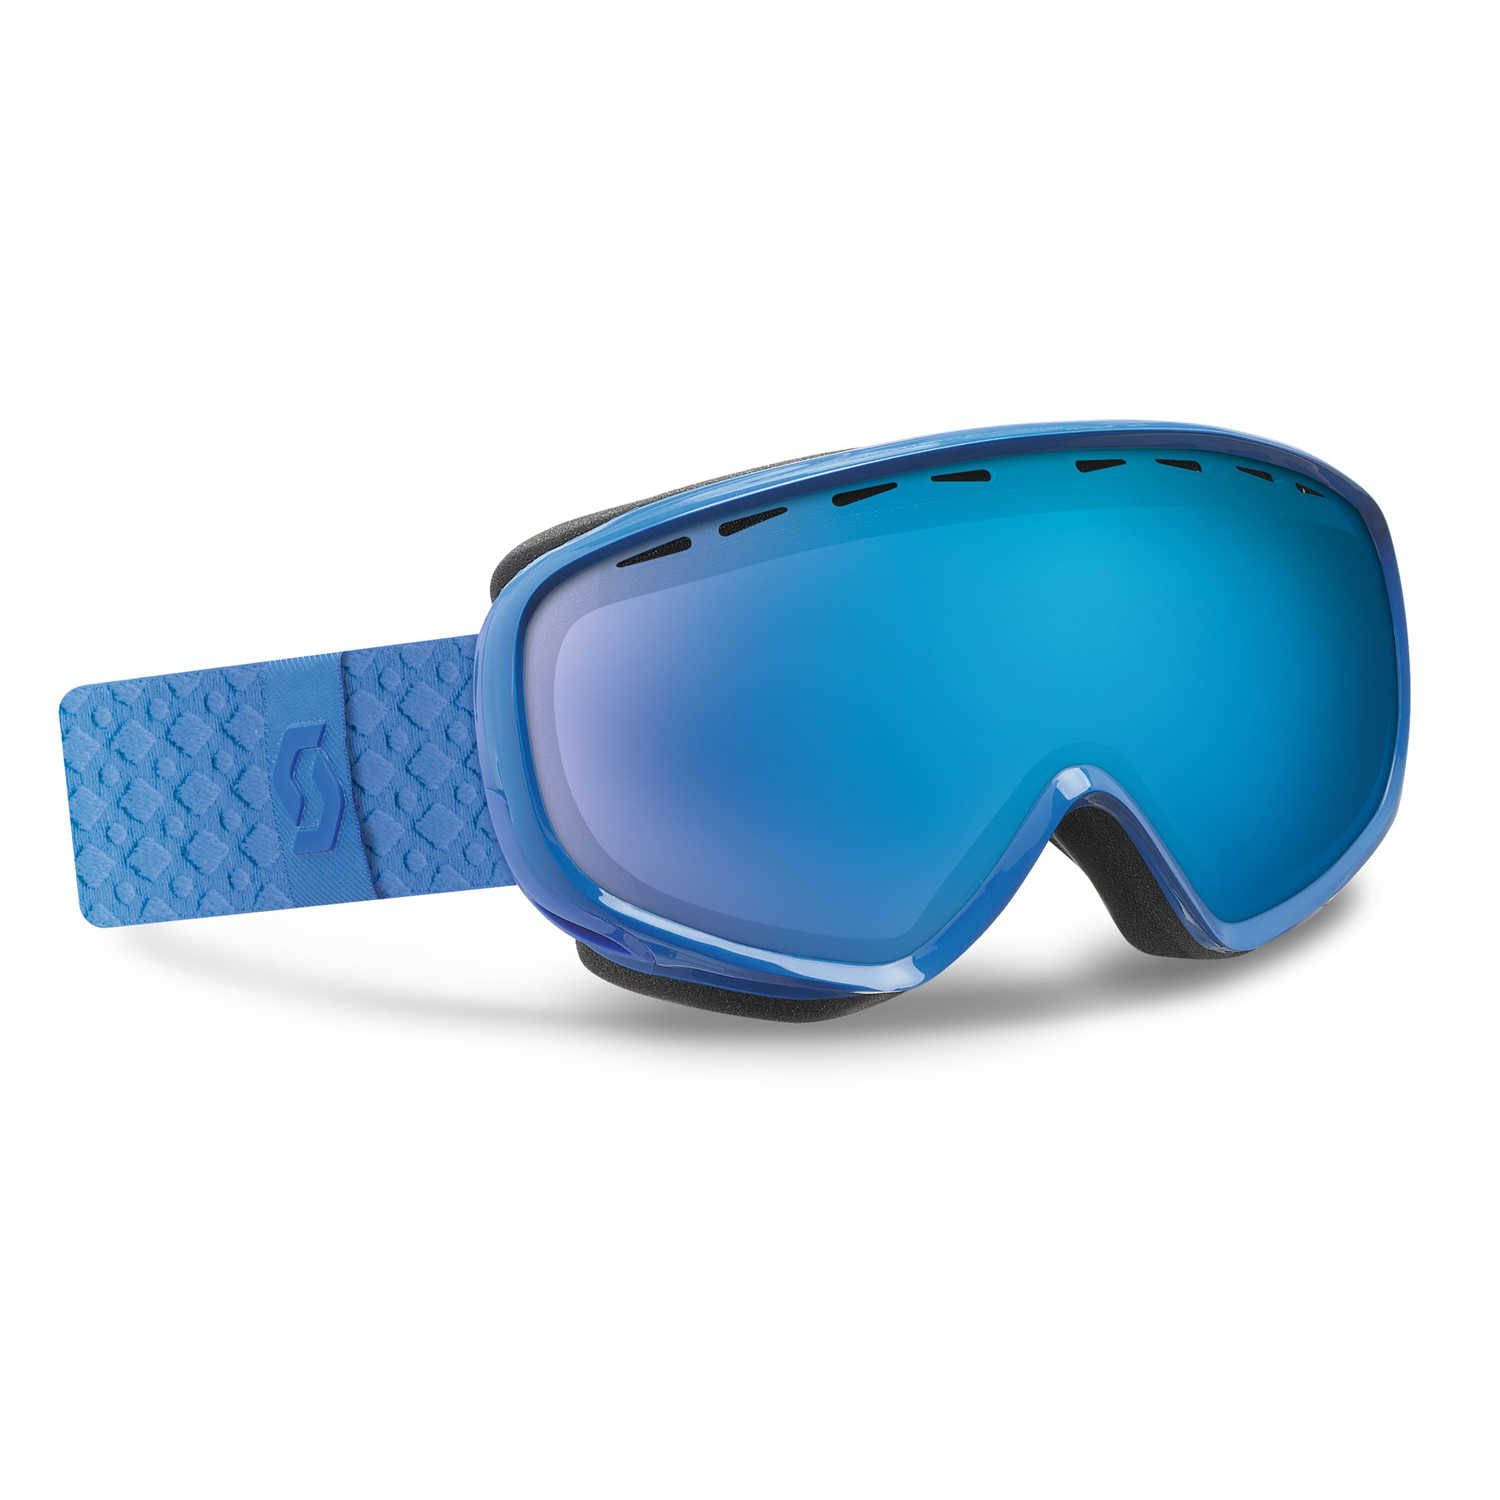 Masque De Ski Dana - Blue Solid Blue Chrome